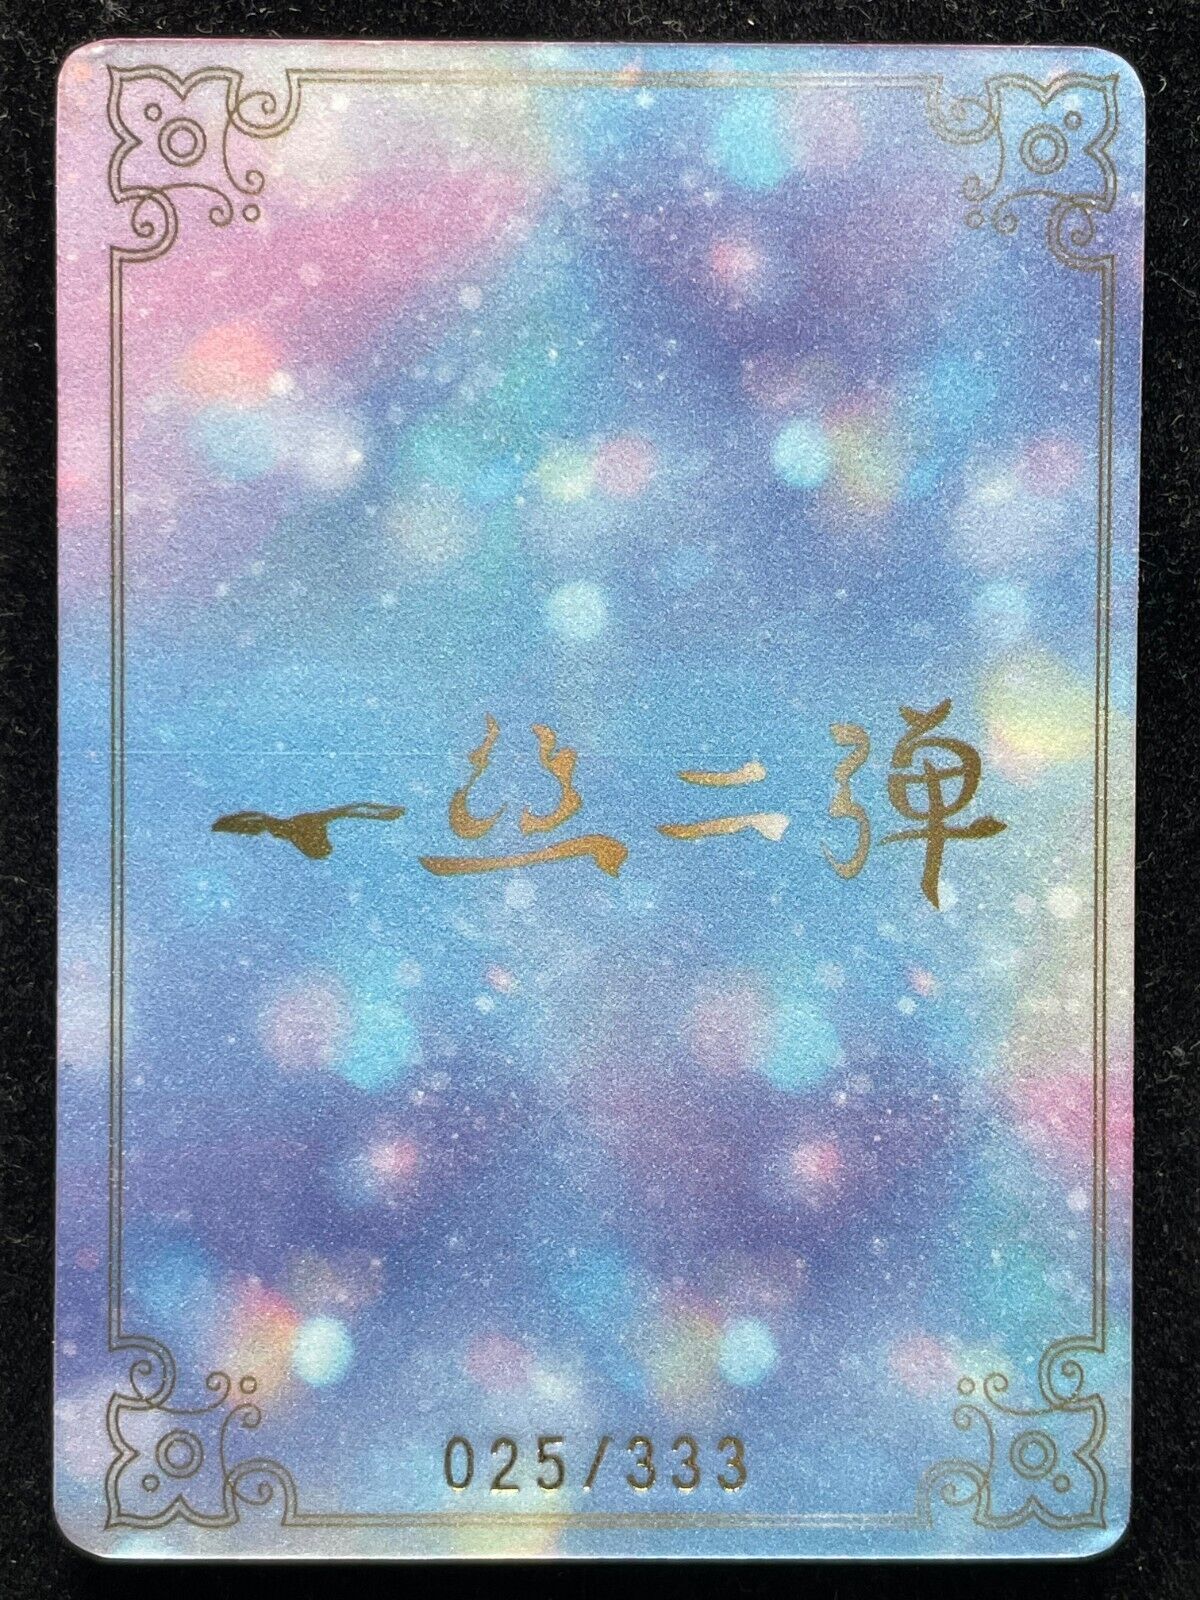 🔥 (25/333) Ayaka Genshin Meika 1 shot 2 Goddess Story Anime Waifu Card SK-07